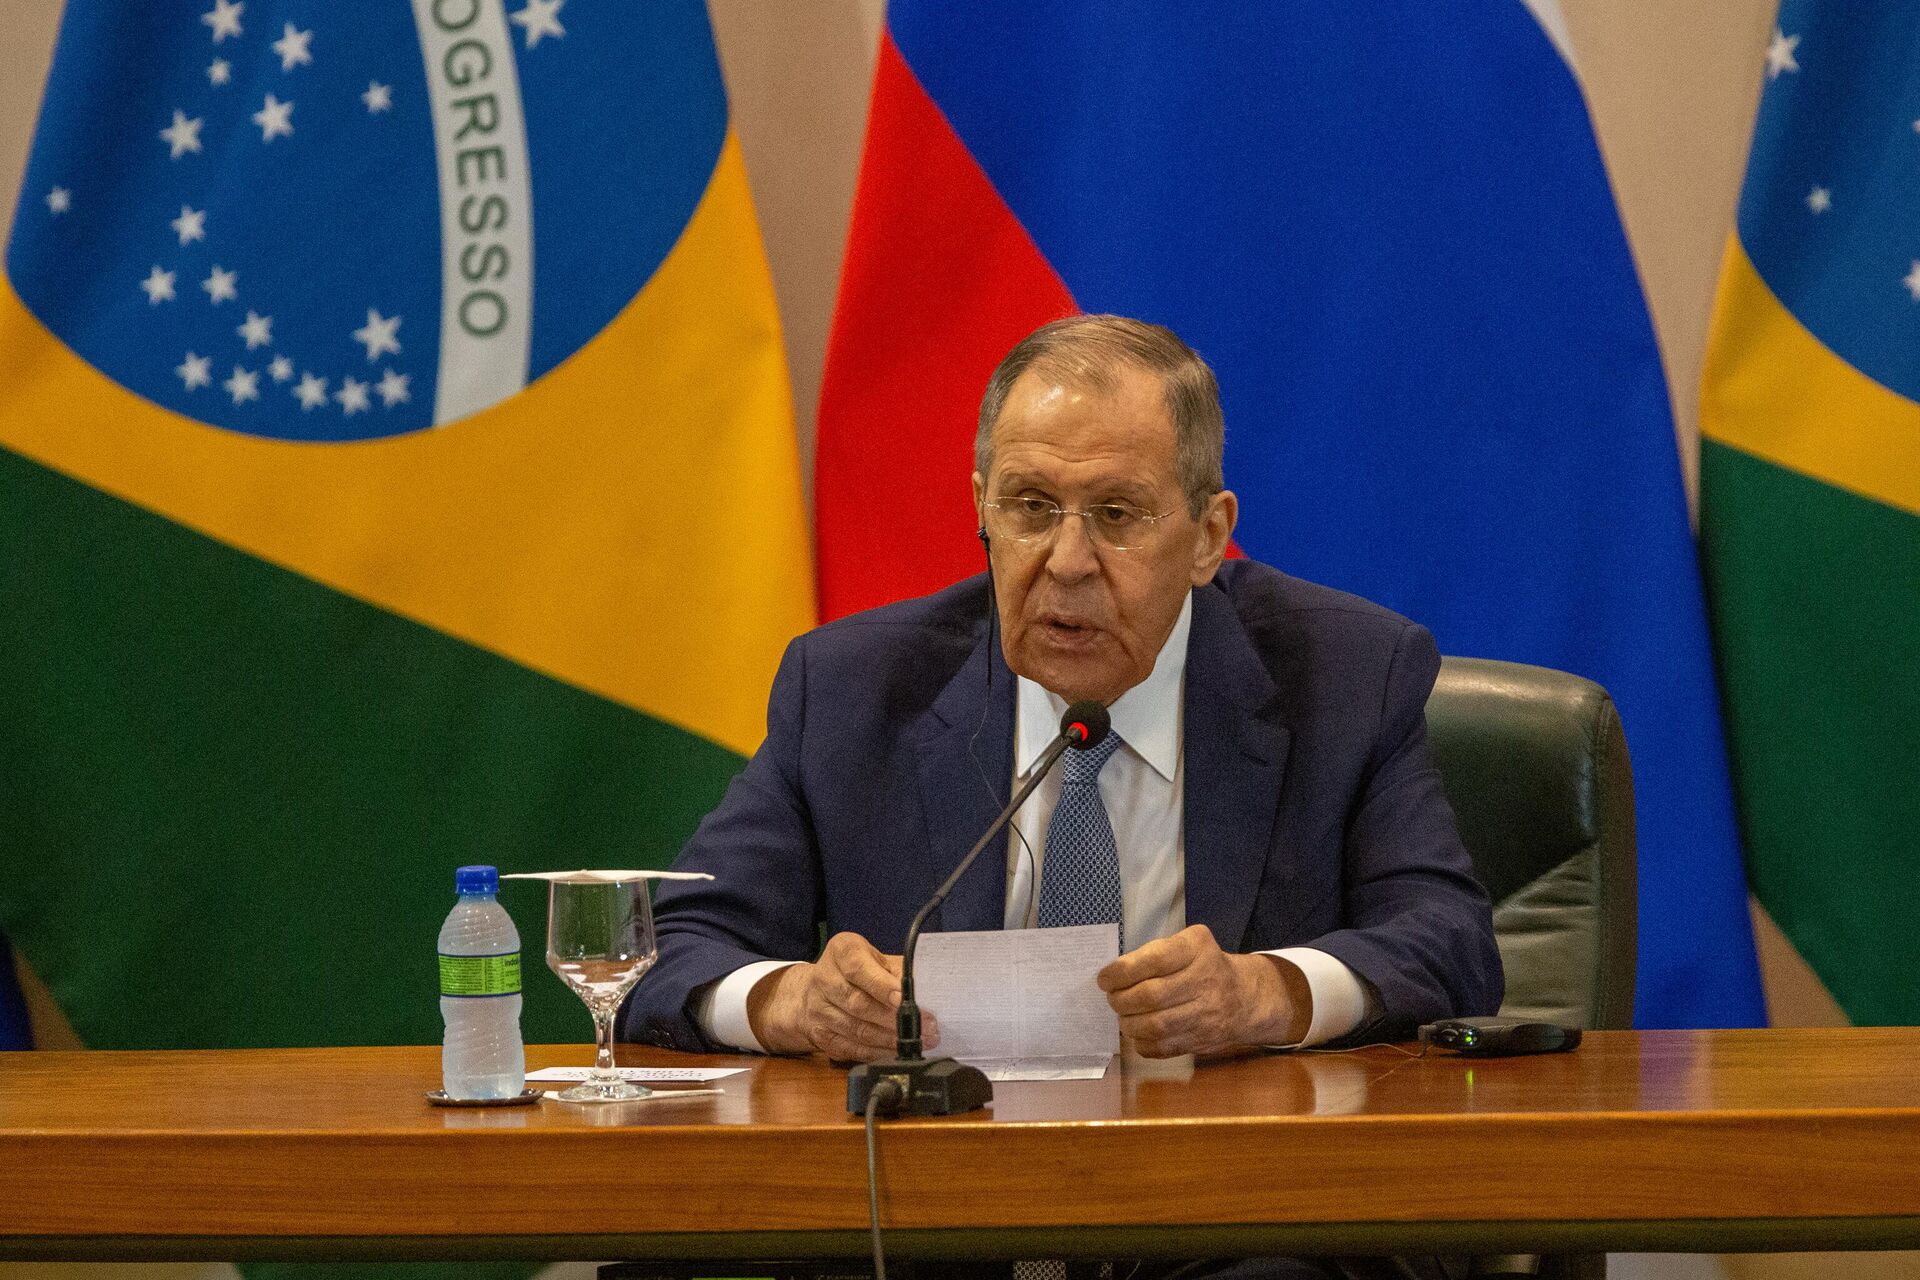 O ministro das Relações Exteriores da Rússia, Sergei Lavrov, durante conferência de imprensa ao lado de seu homólogo brasileiro, Mauro Vieira, no Palácio Itamaraty, em Brasília (DF), em 17 de abril de 2023 - Sputnik Brasil, 1920, 17.04.2023